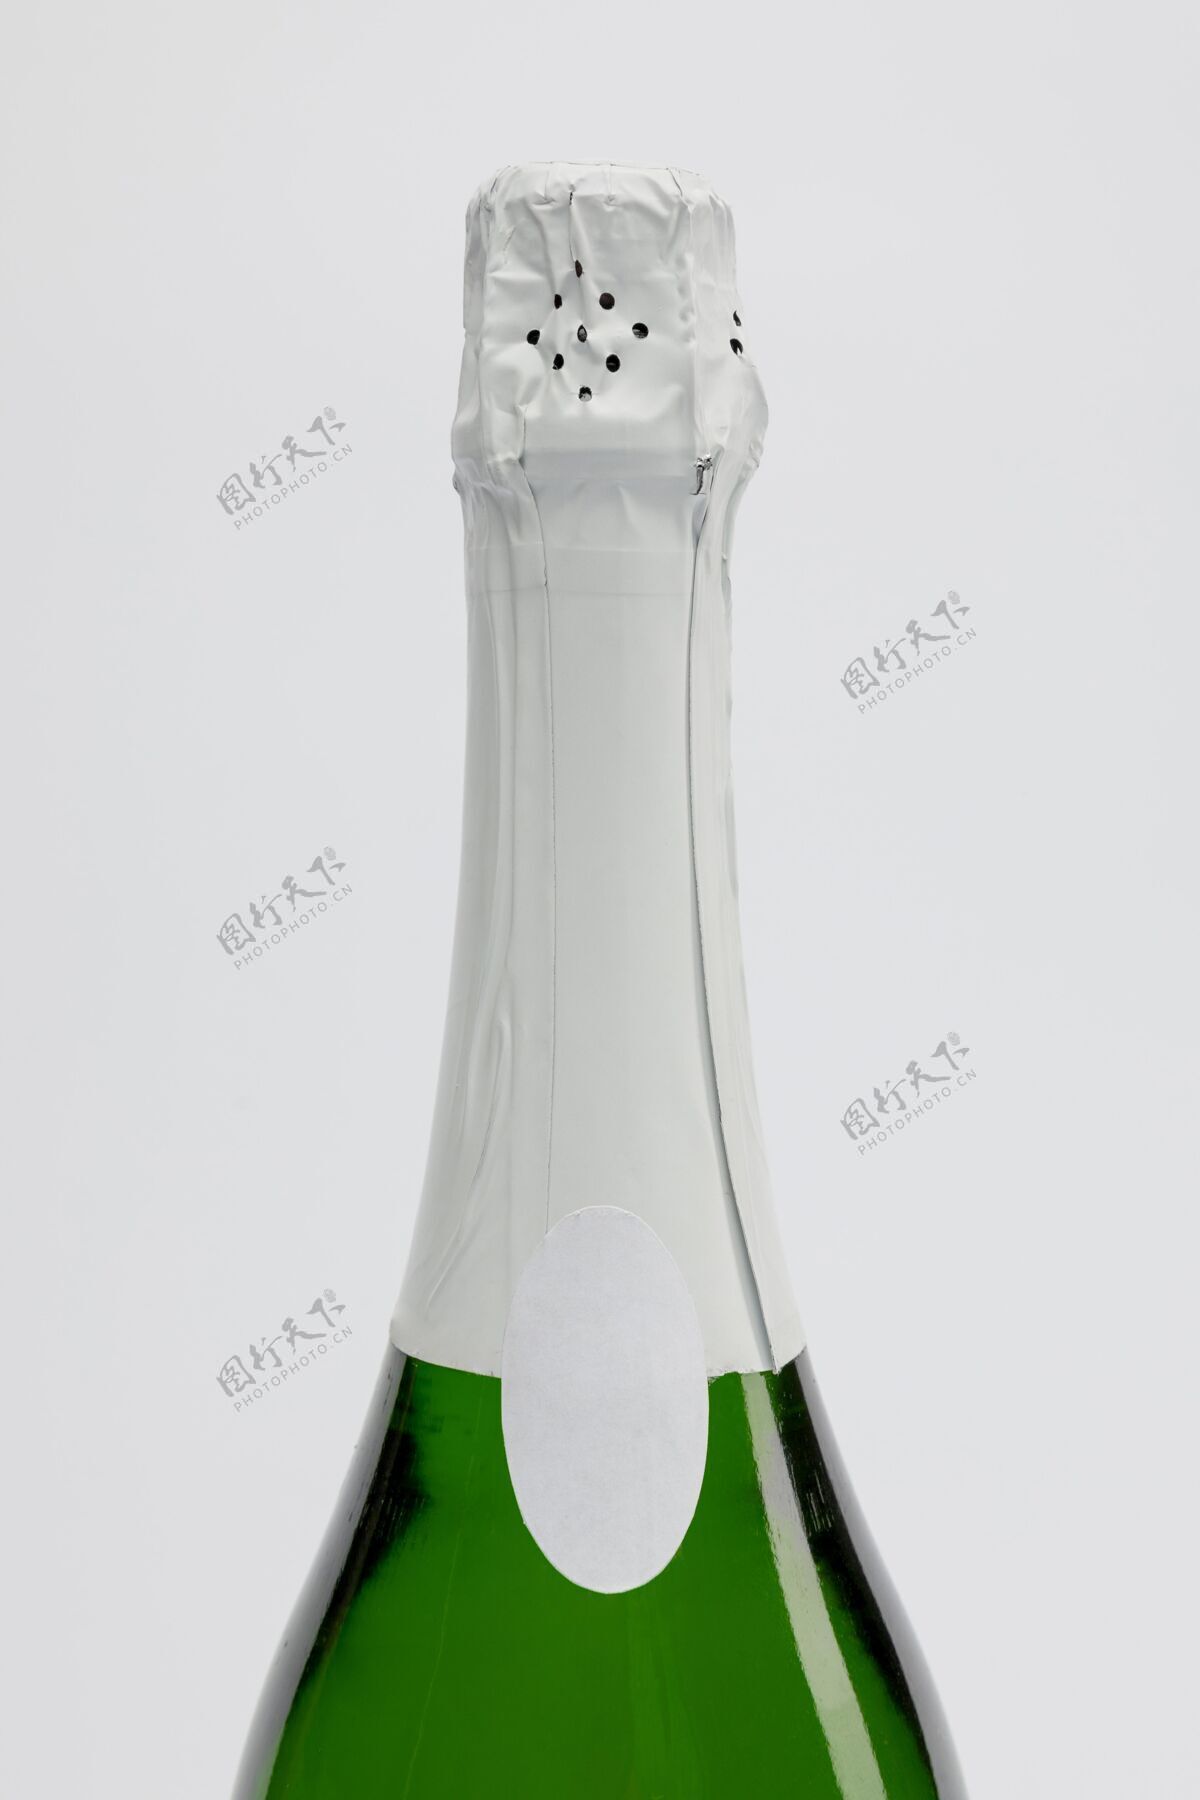 前夜带模型的香槟瓶香槟瓶瓶子香槟